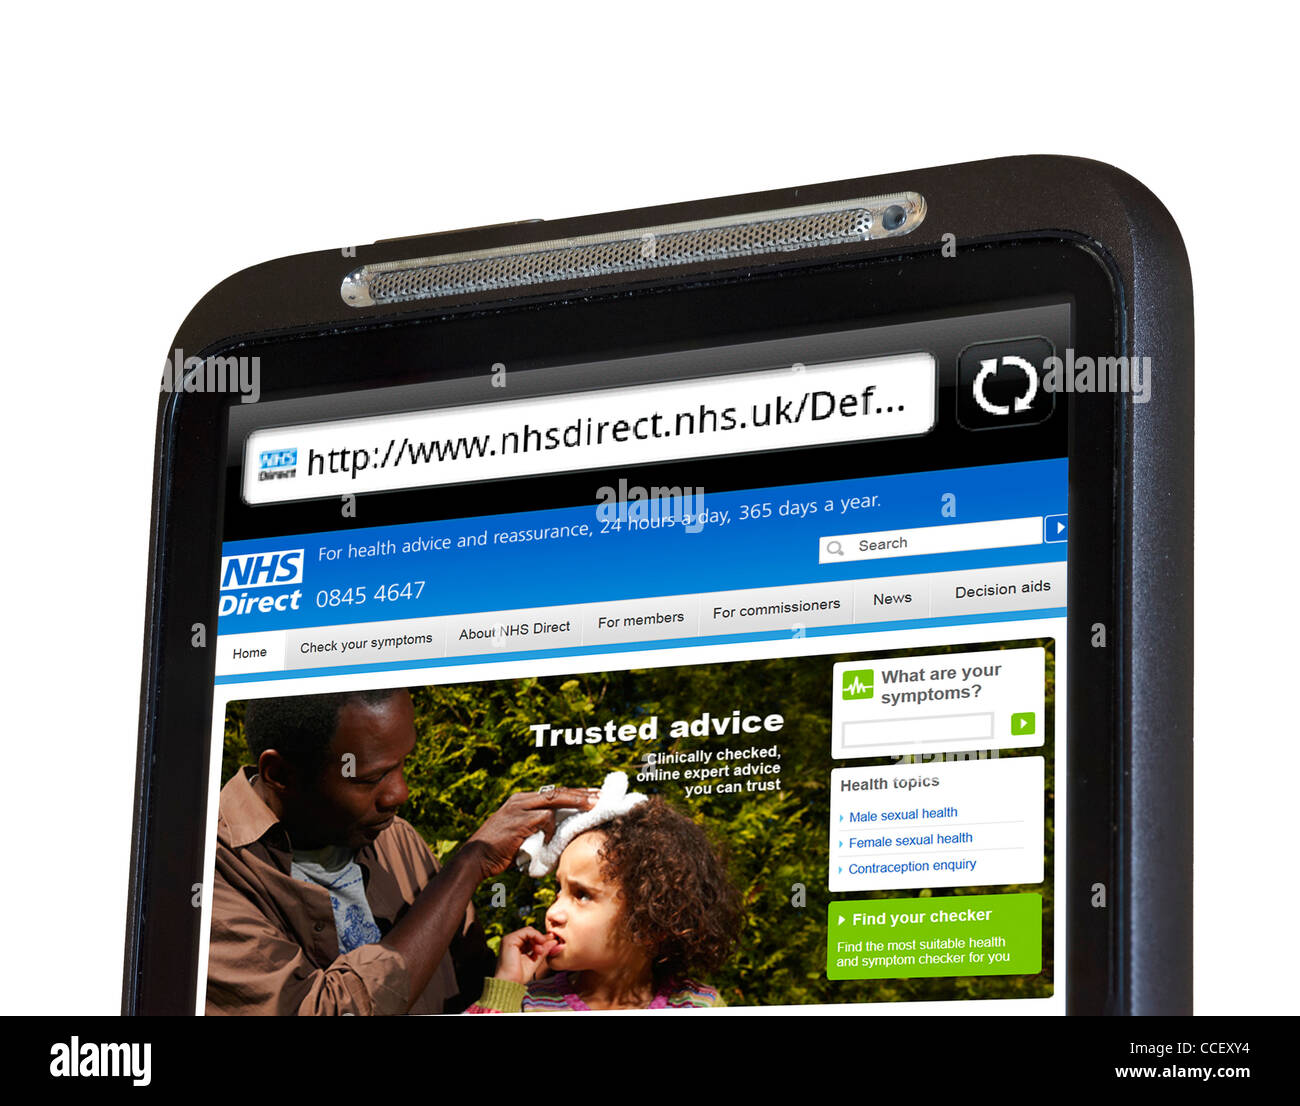 Le site web des conseils de santé NHS Direct vu sur un smartphone HTC, England, UK Banque D'Images